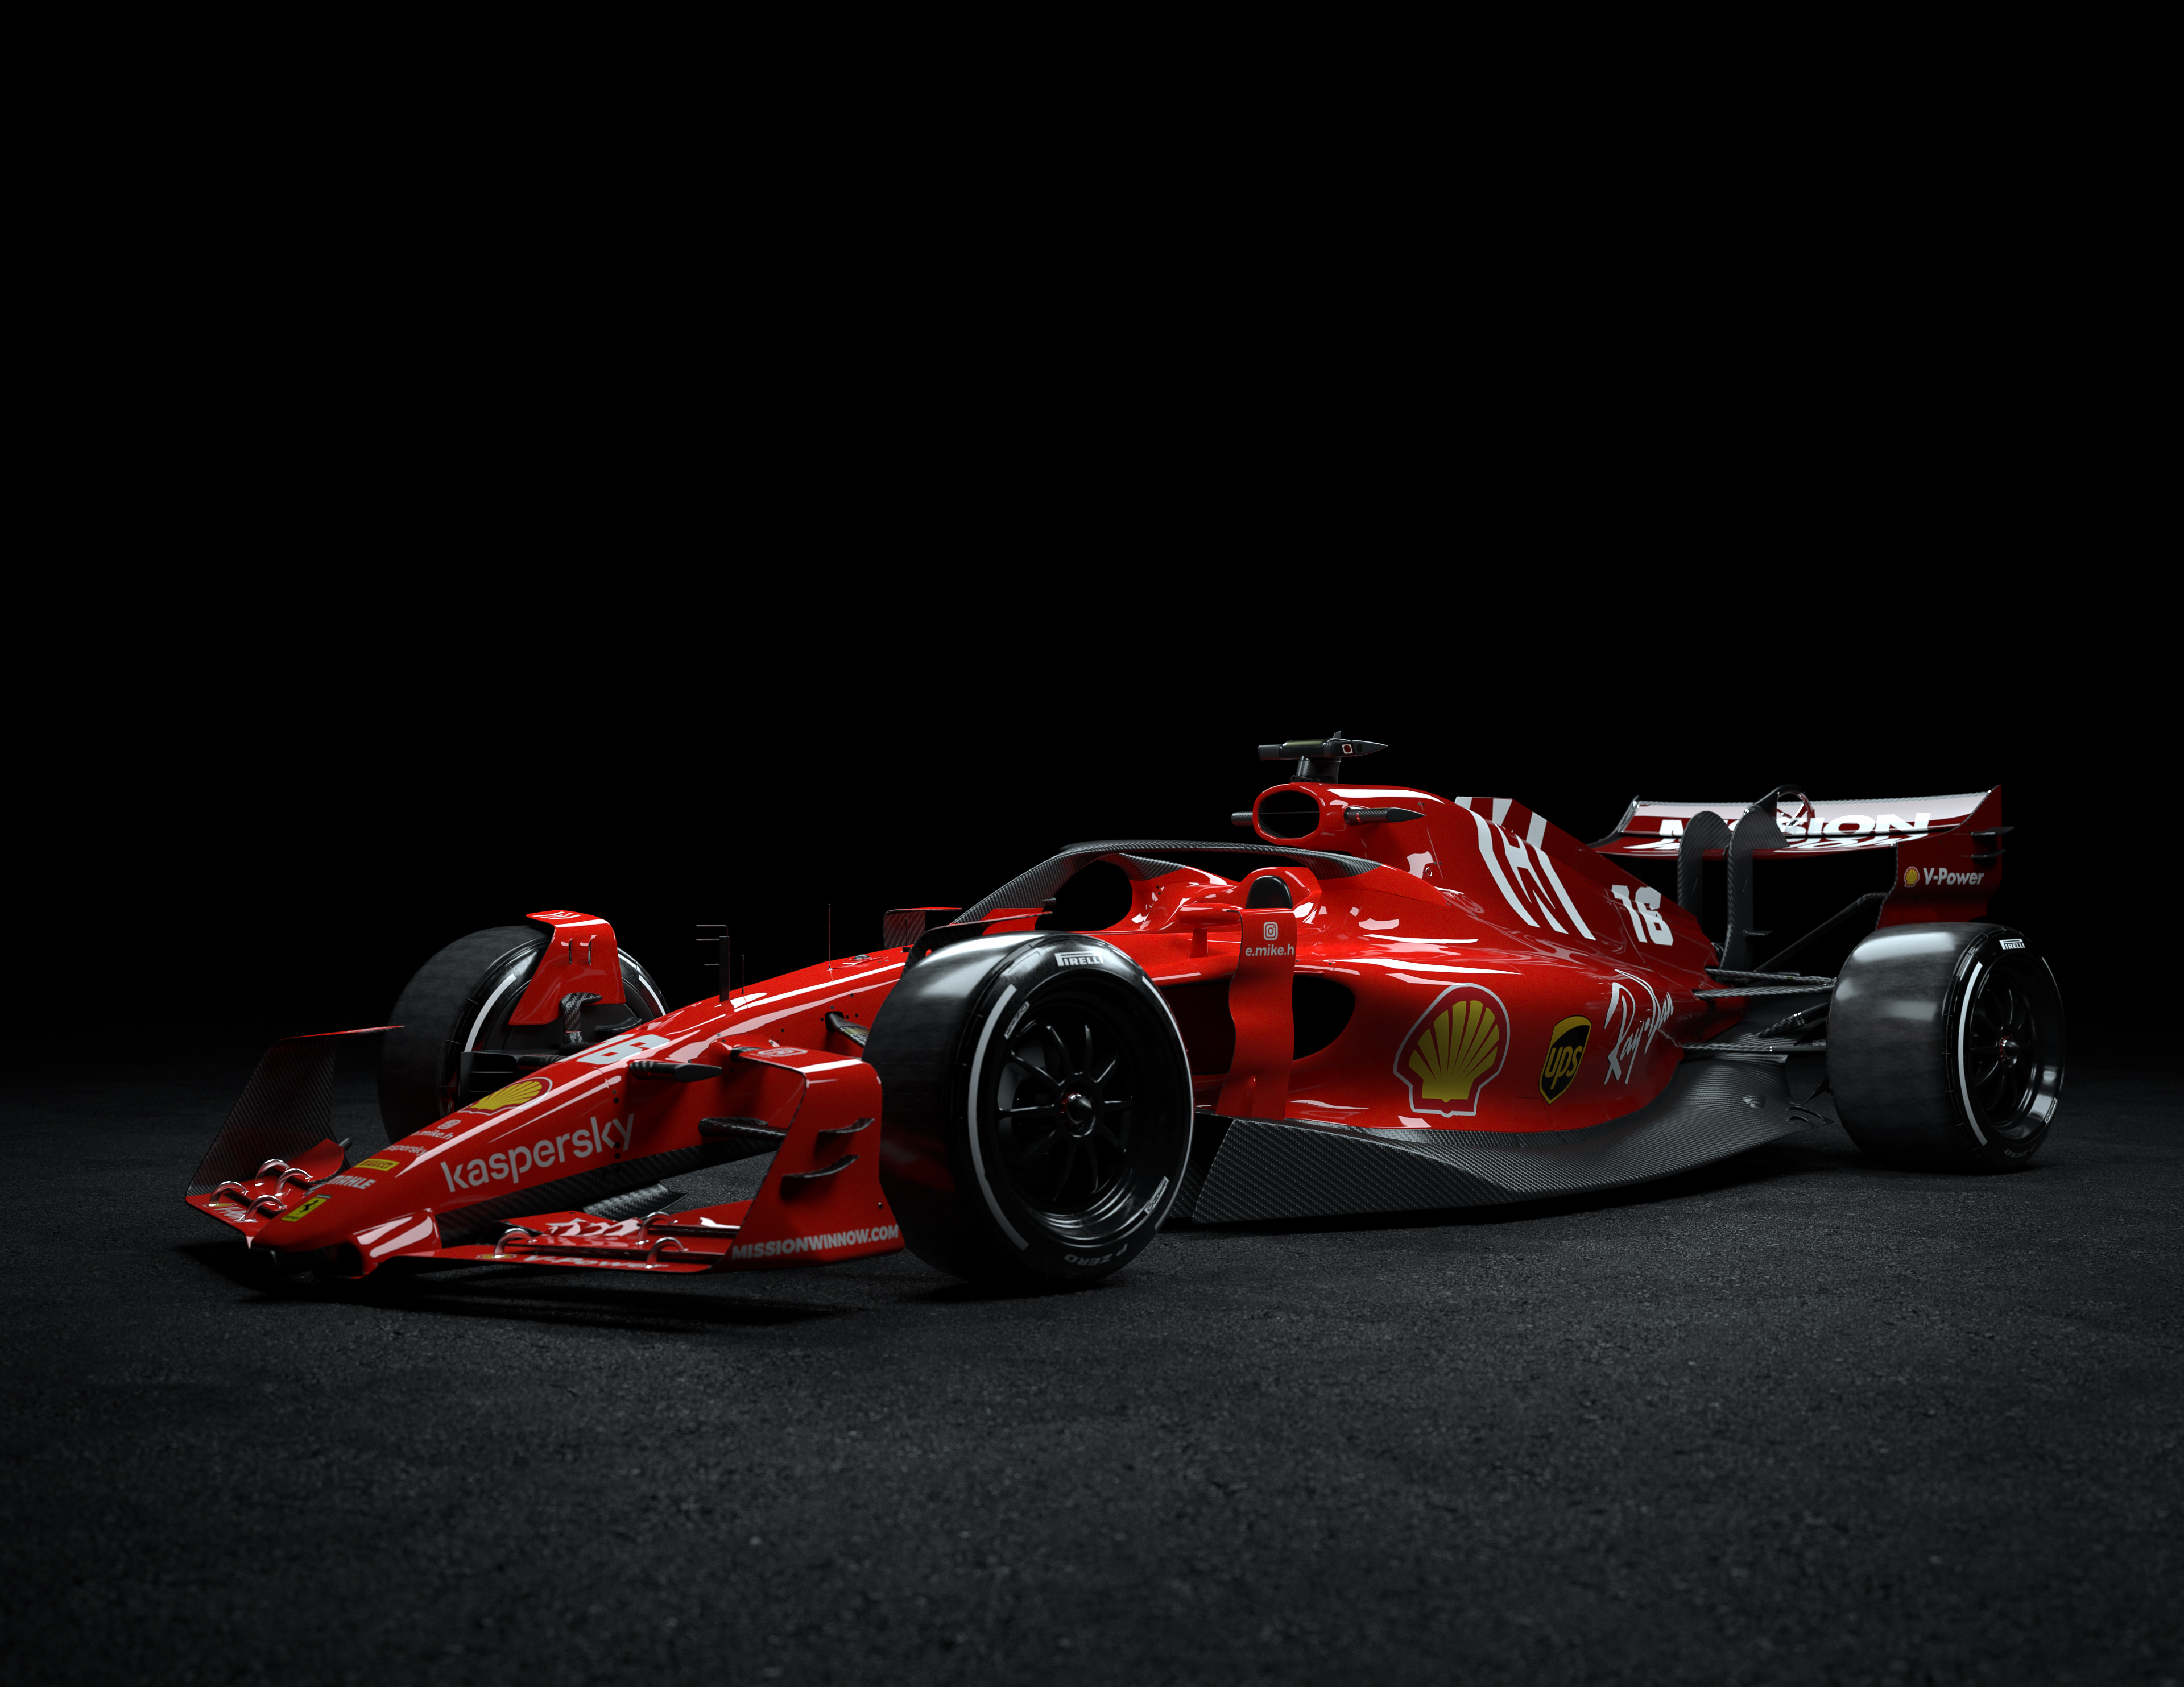 2022 F1 car concept. 